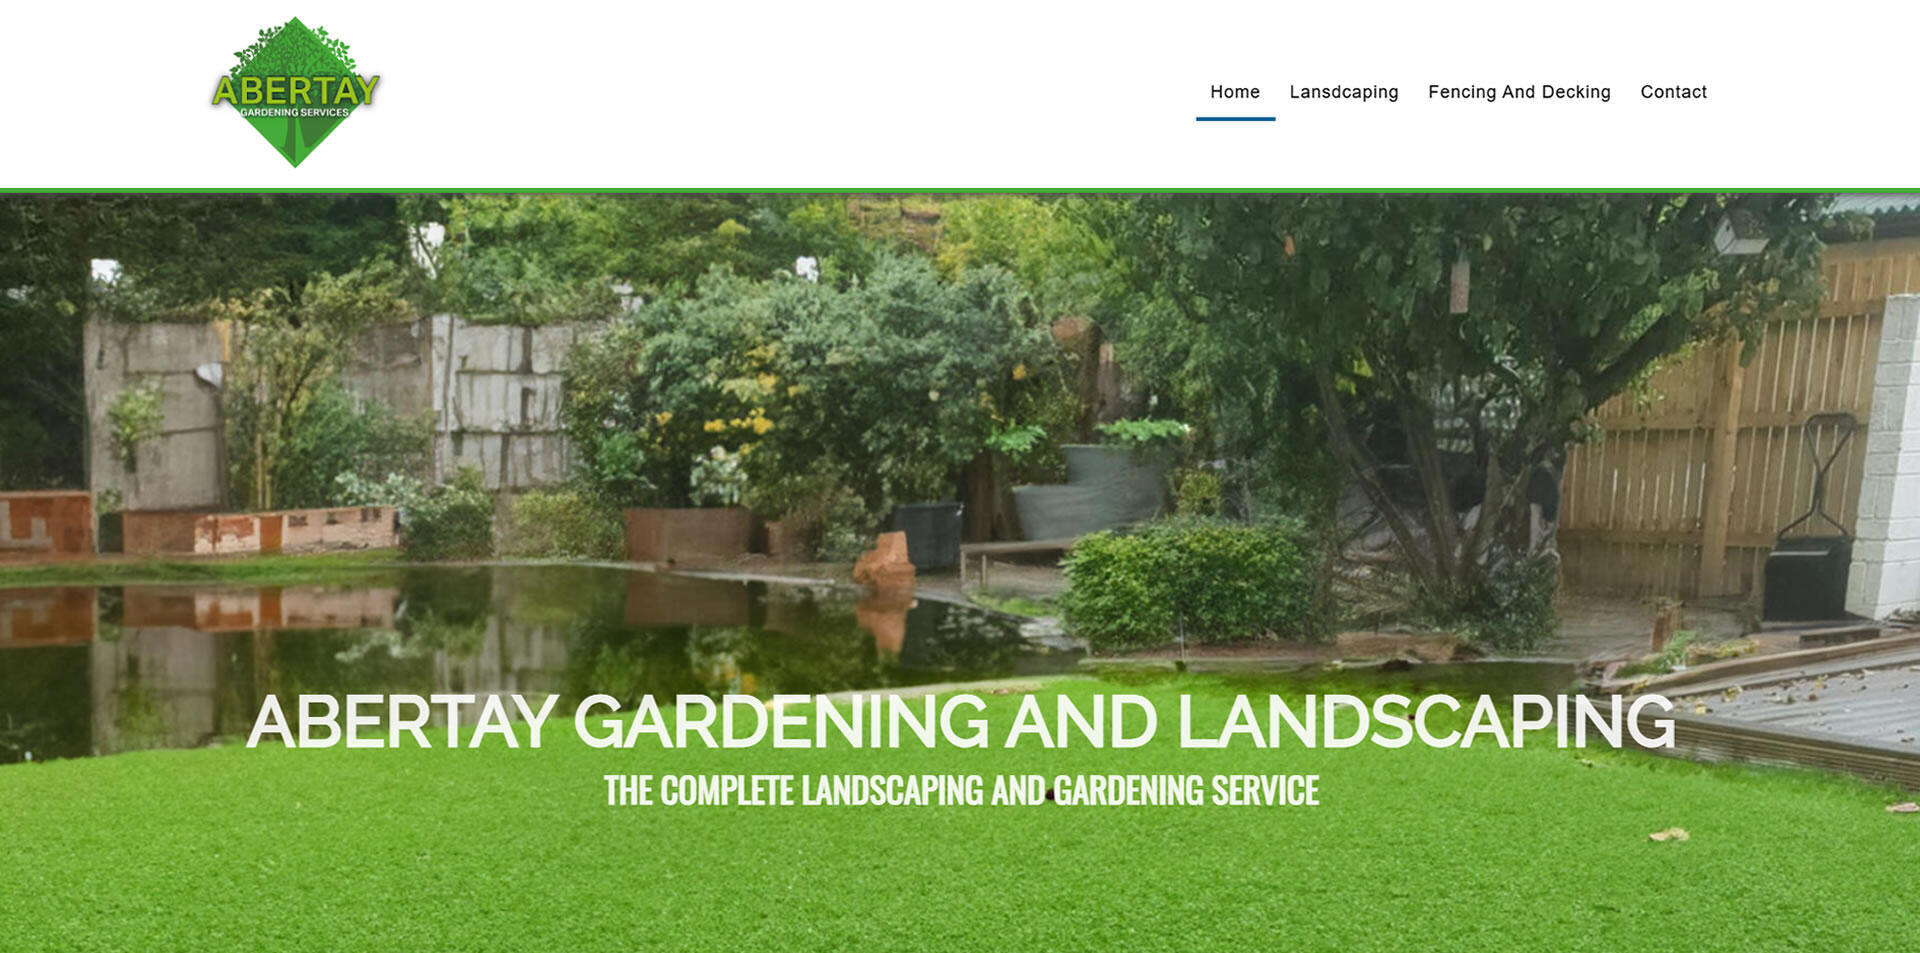 website designed for Abertay Gardening